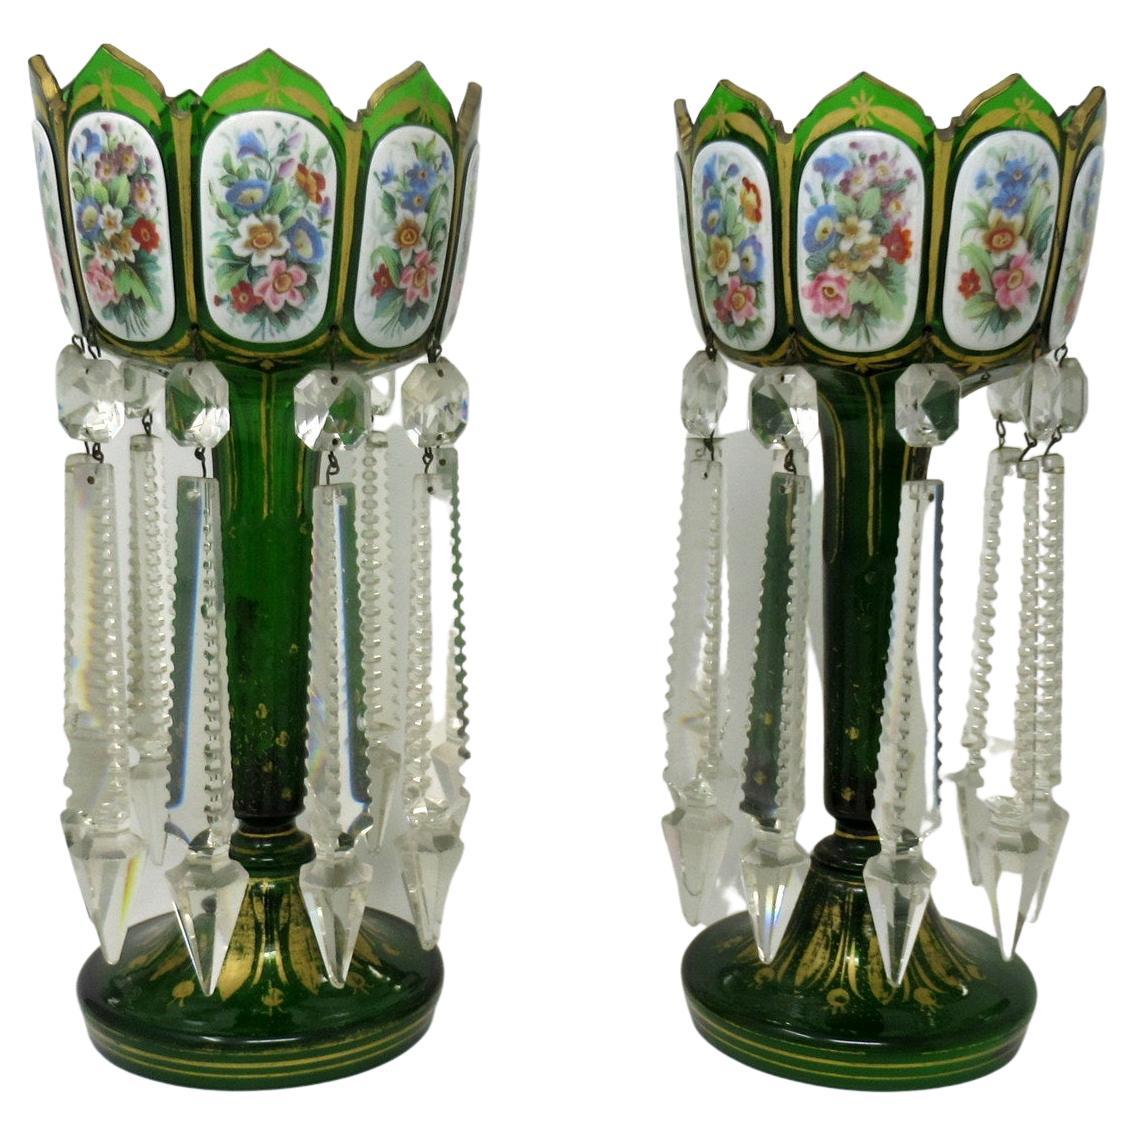 Paire de chandeliers de Bohème anciens en cristal et émail vert émeraude superposés